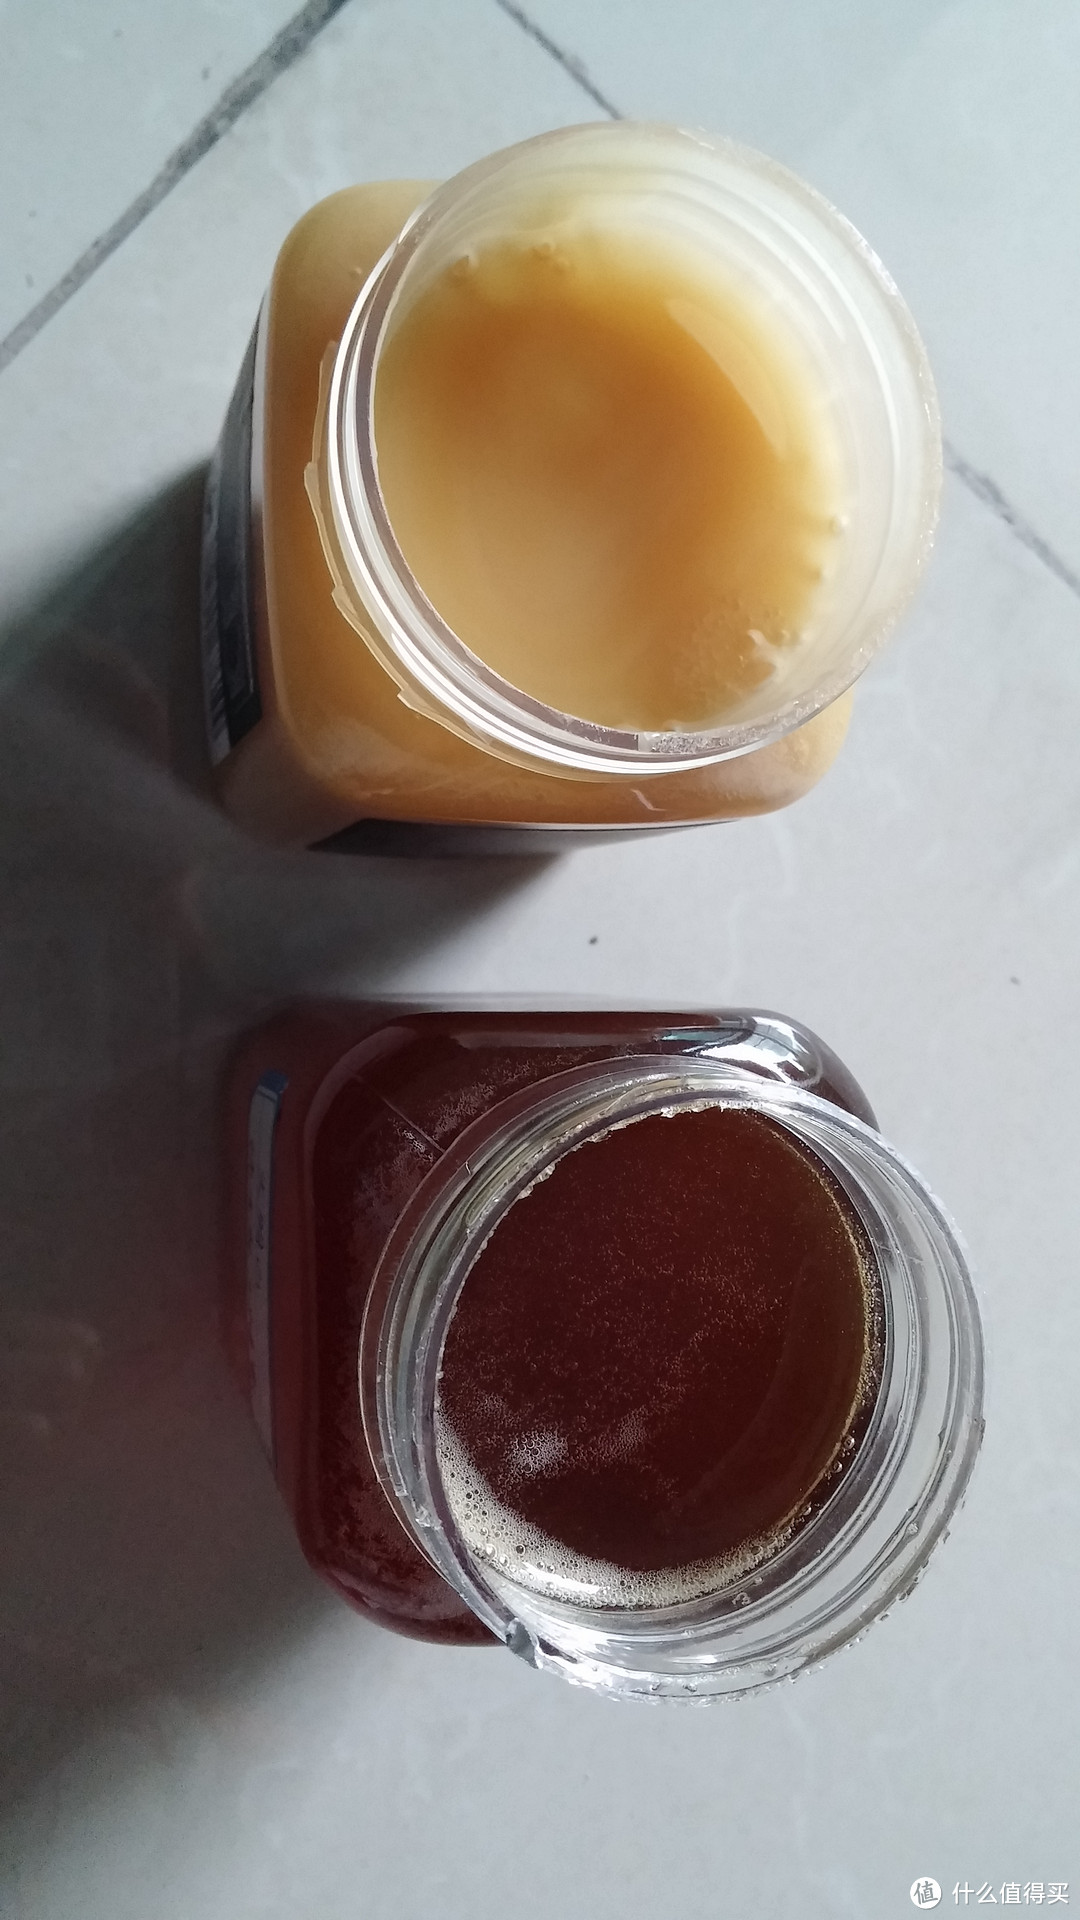 MANUKA KING 纽蜂王 南岛苜蓿花蜂蜜 与 康维他、国产某品牌的不科学对比